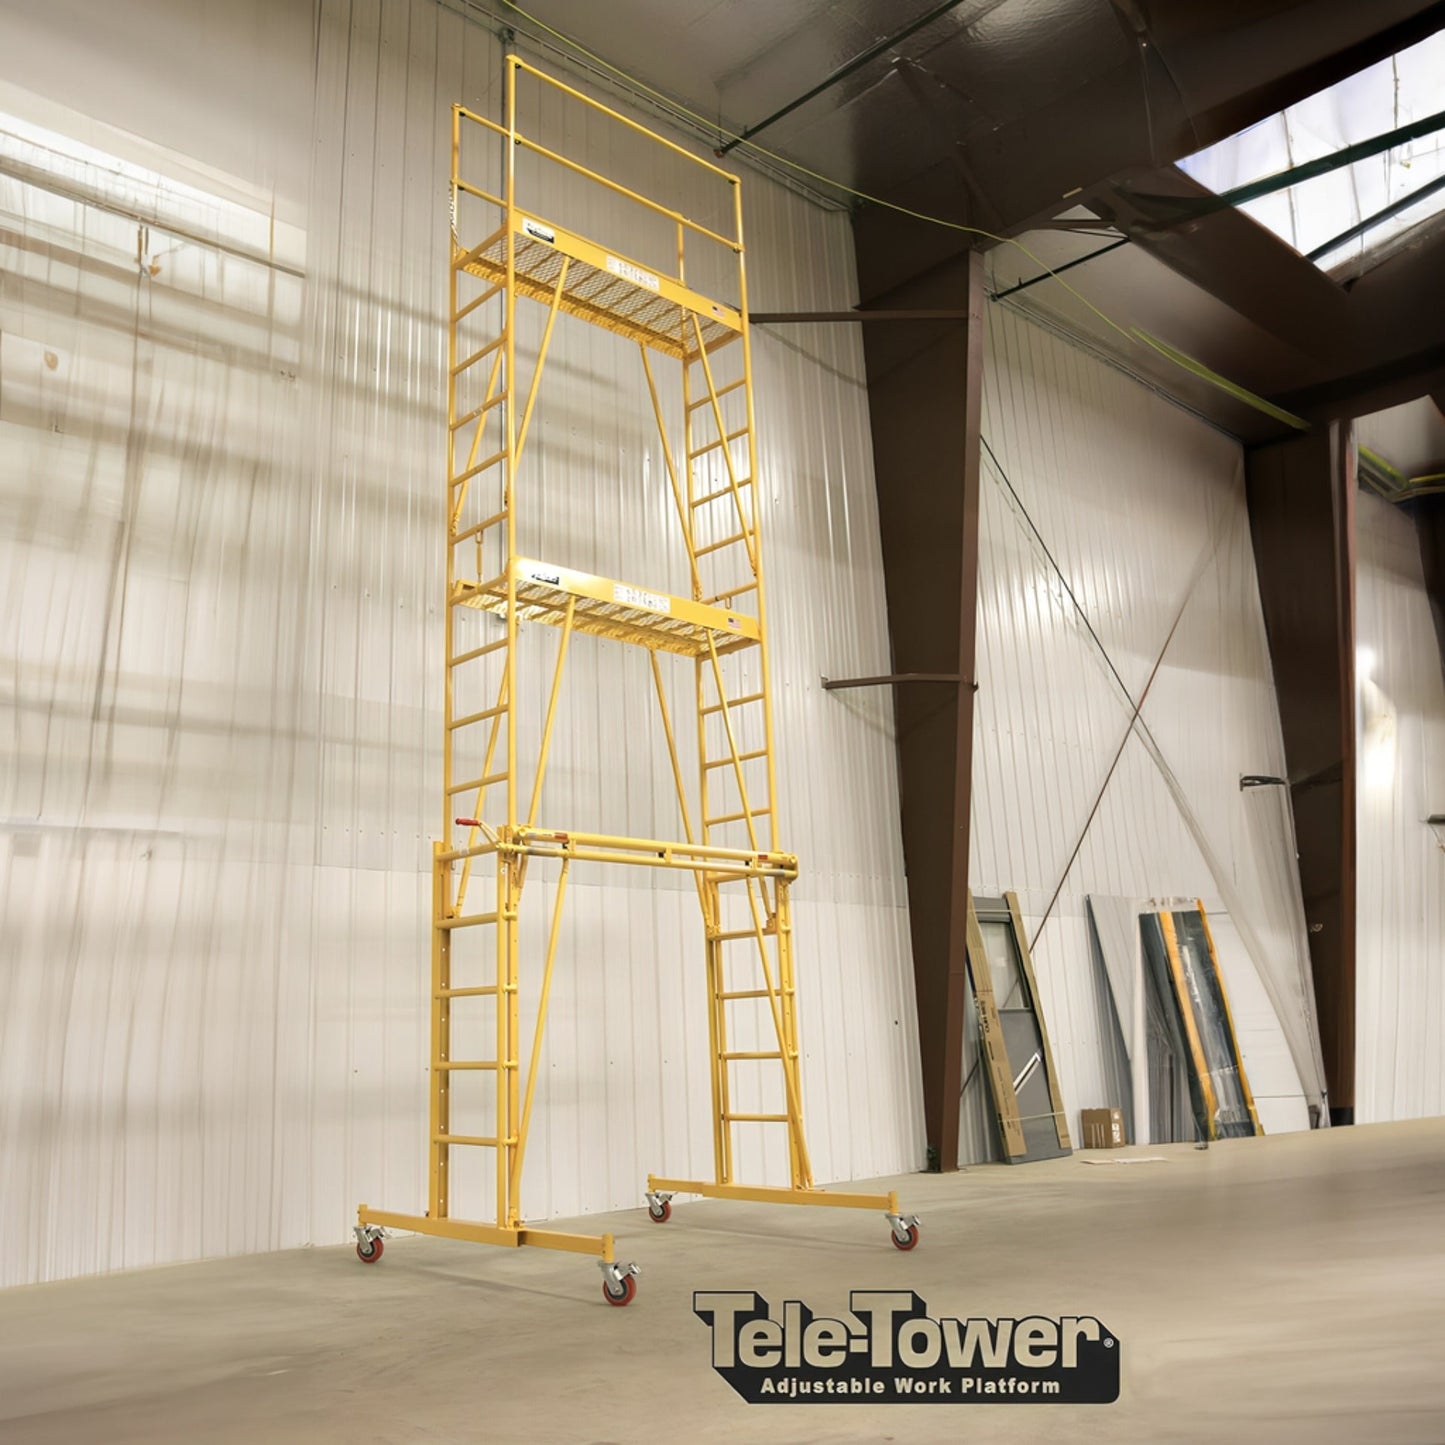 Tele - tower Ajustable Work Platform Model 1101 - paragonpromfg